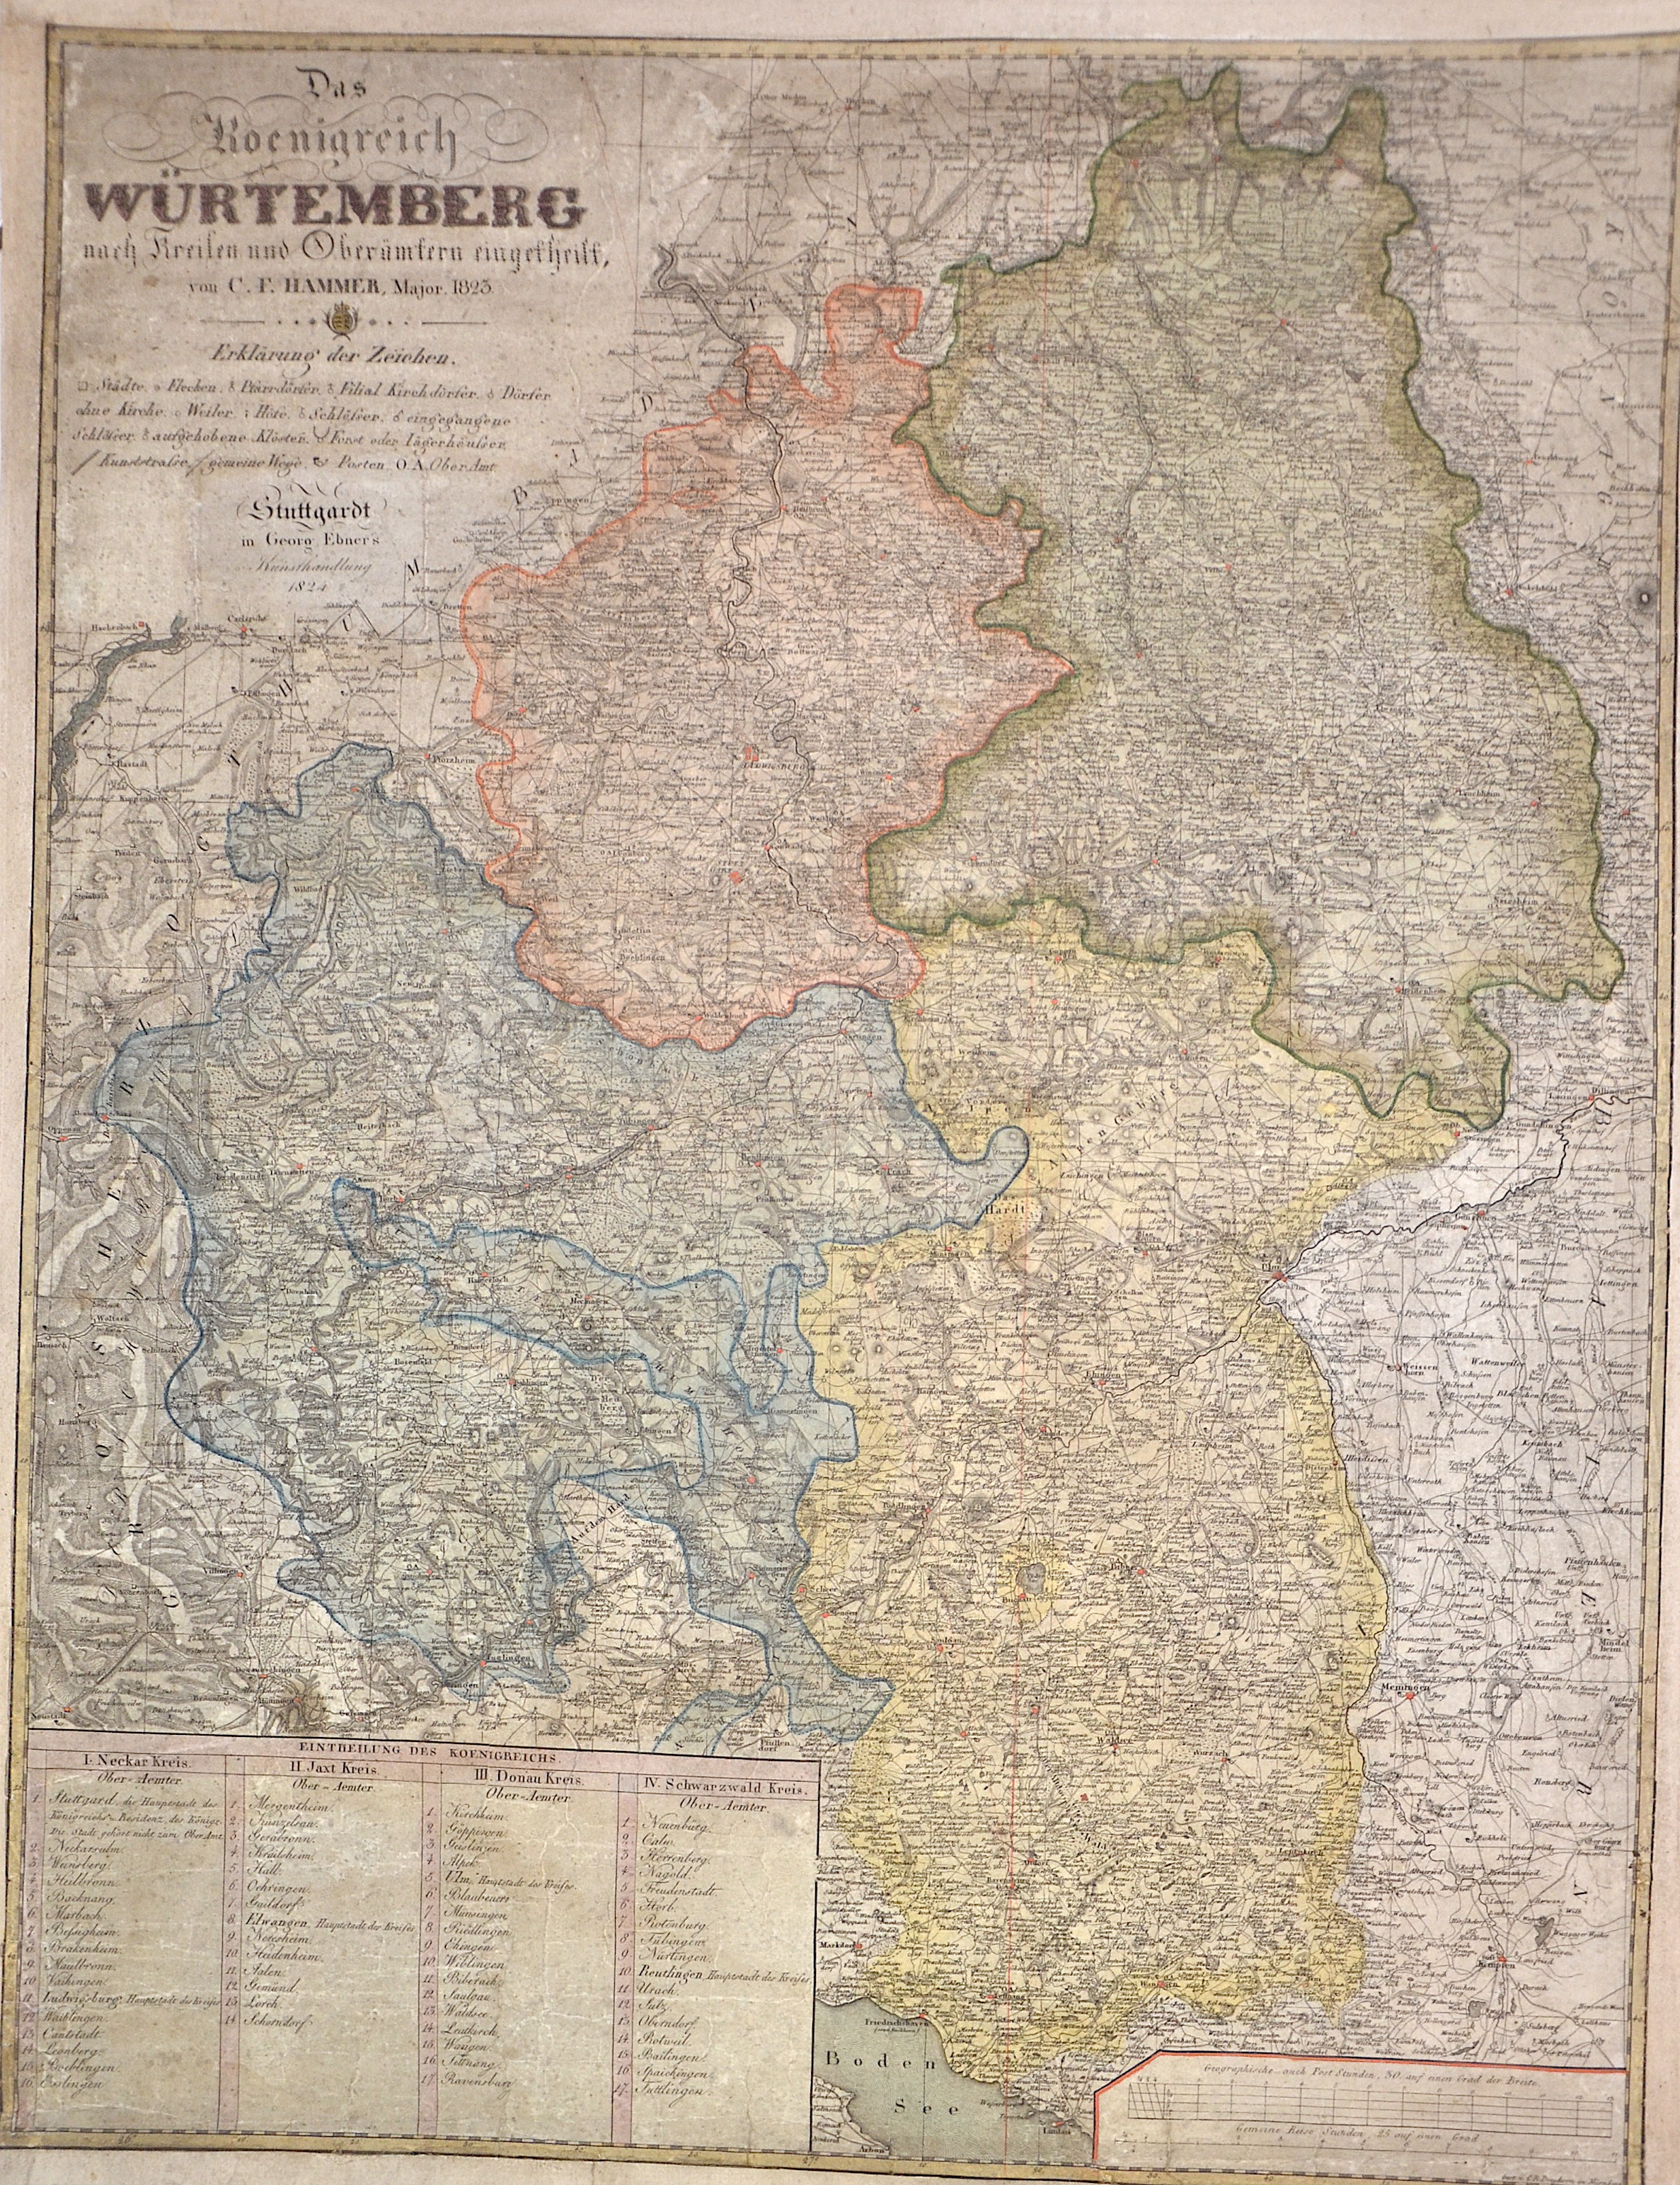 Dreykorn  Das Koenigreich Würtemberg nach Kreisen und Oberämtern eingefheilt, von C. F. Hammer, Major. 1823